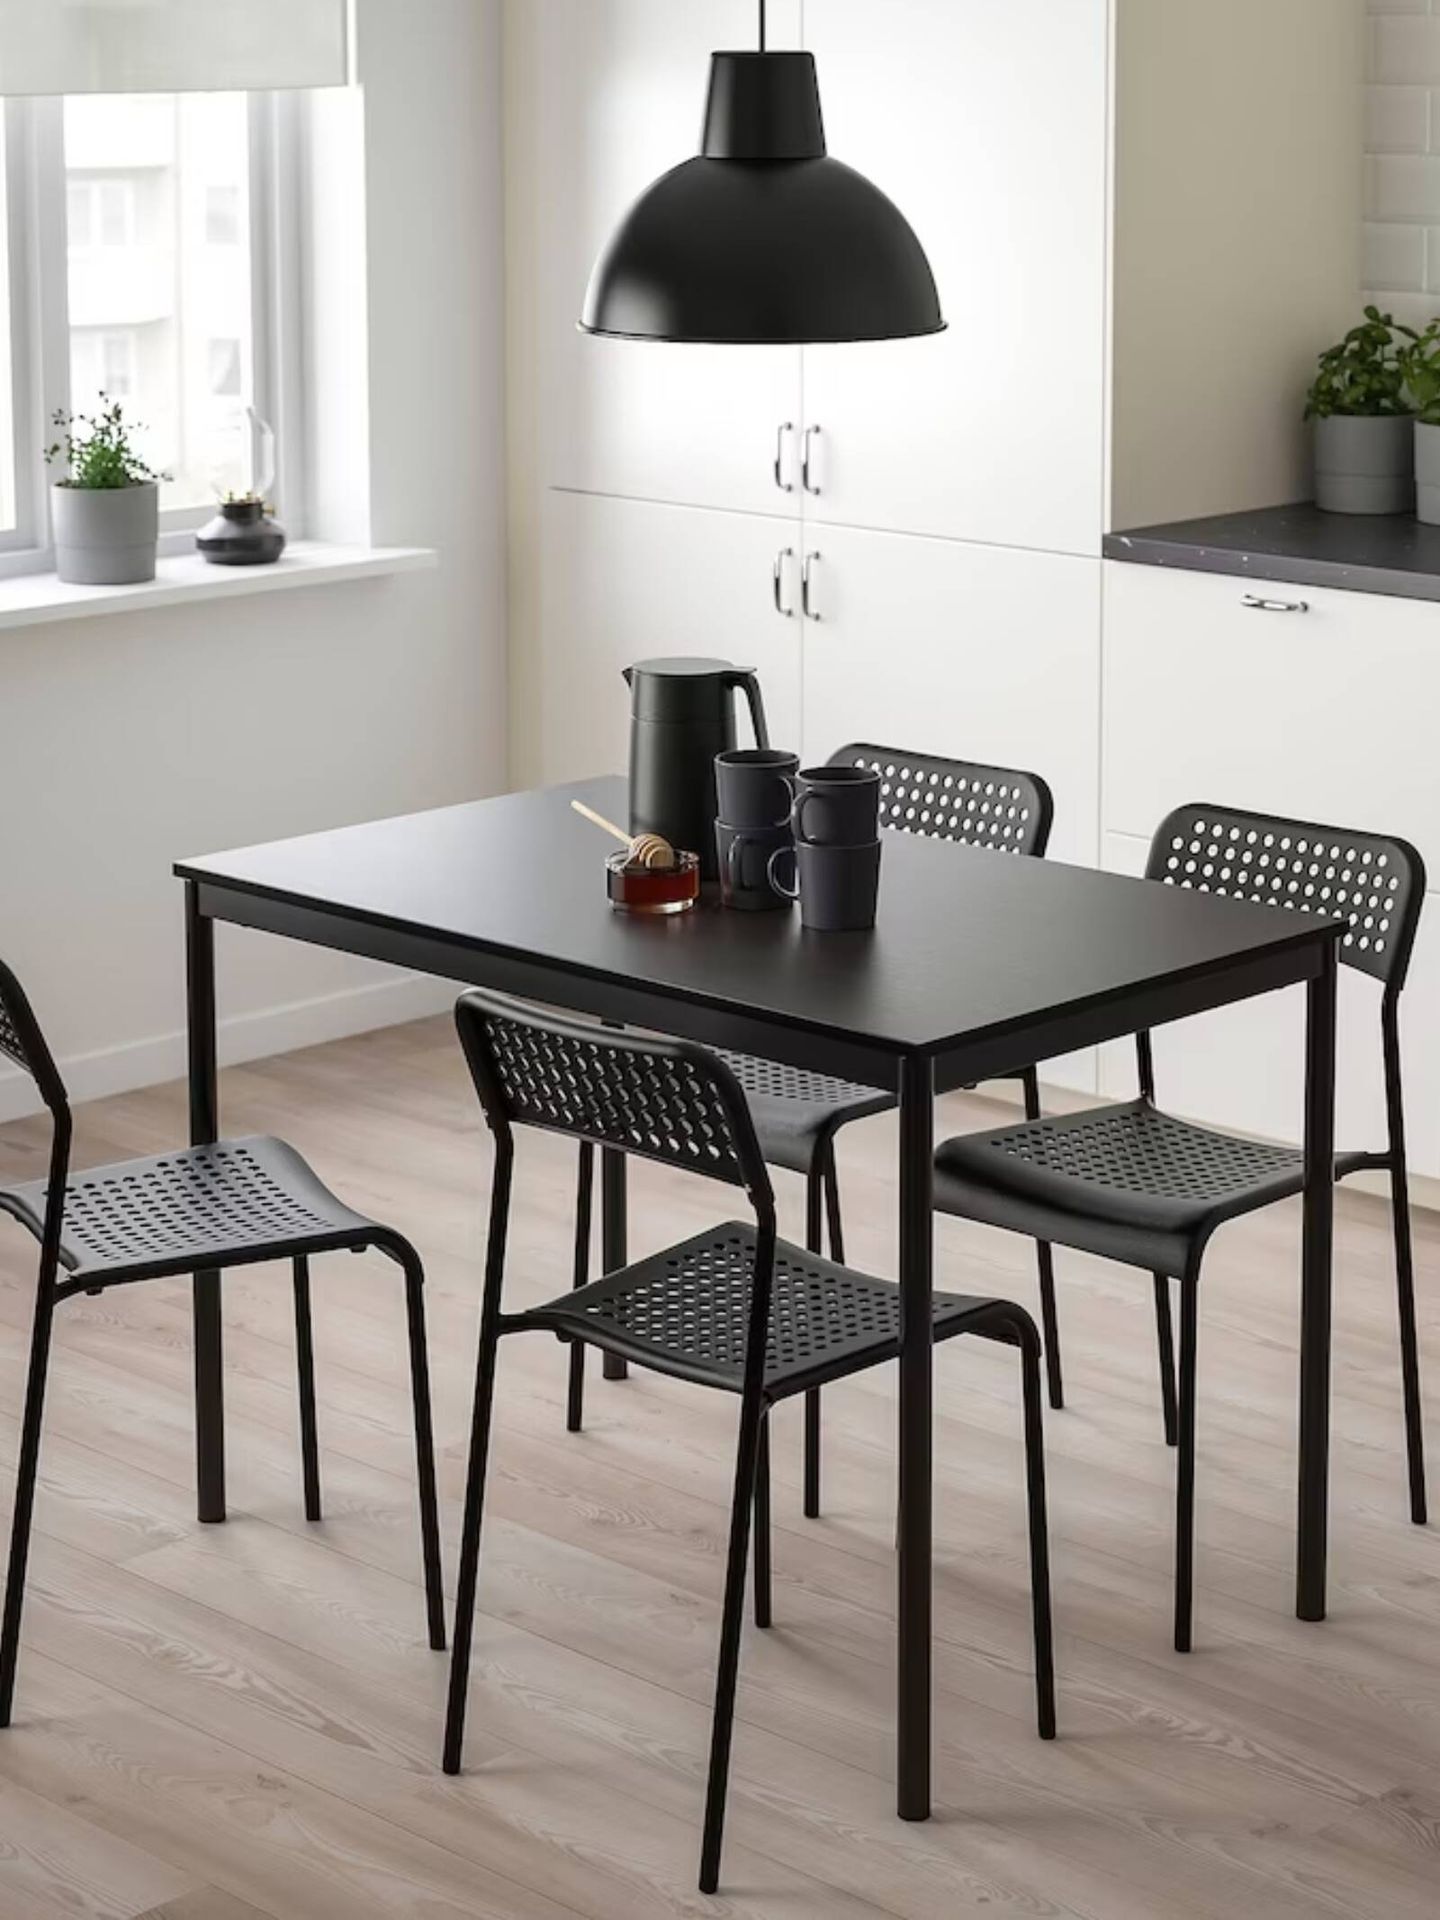 Muebles de Ikea baratos para una casa estilosa. (Cortesía/Ikea)